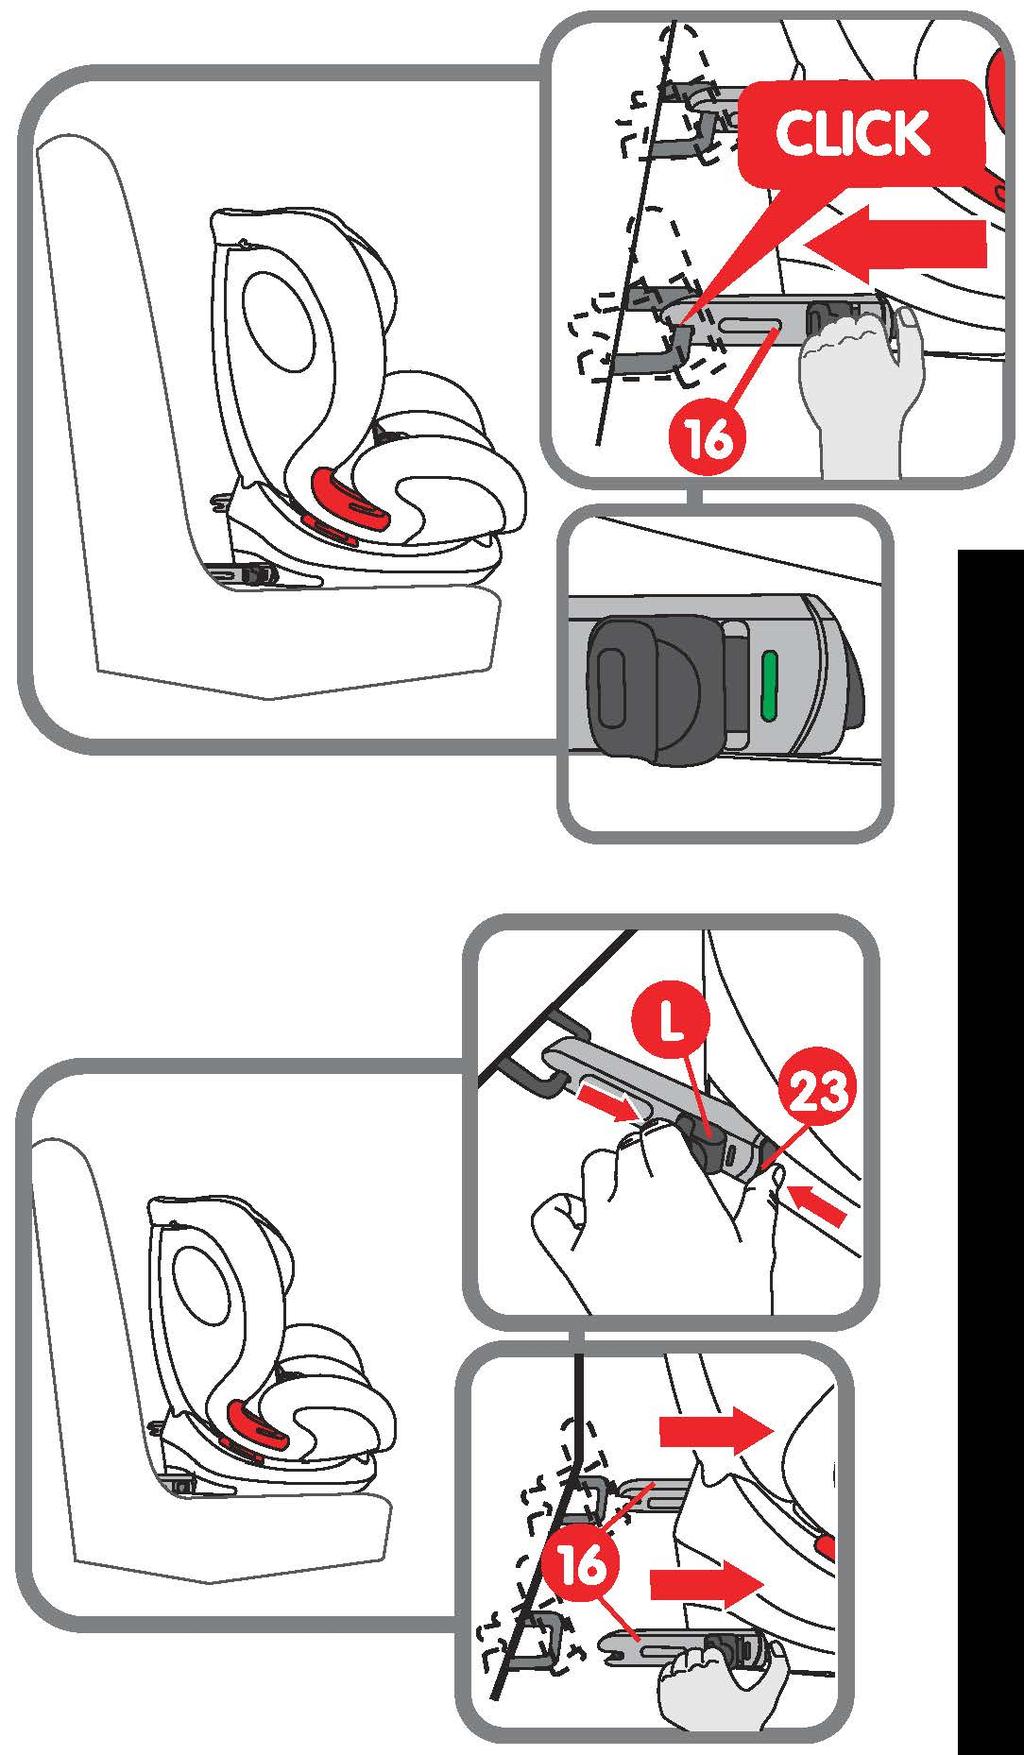 Połóż ręce na foteliku i dociśnij go do oparcia w pojeździe. Upewnij się, że tył fotelika ściśle przylega do oparcia siedzenia pojazdu.